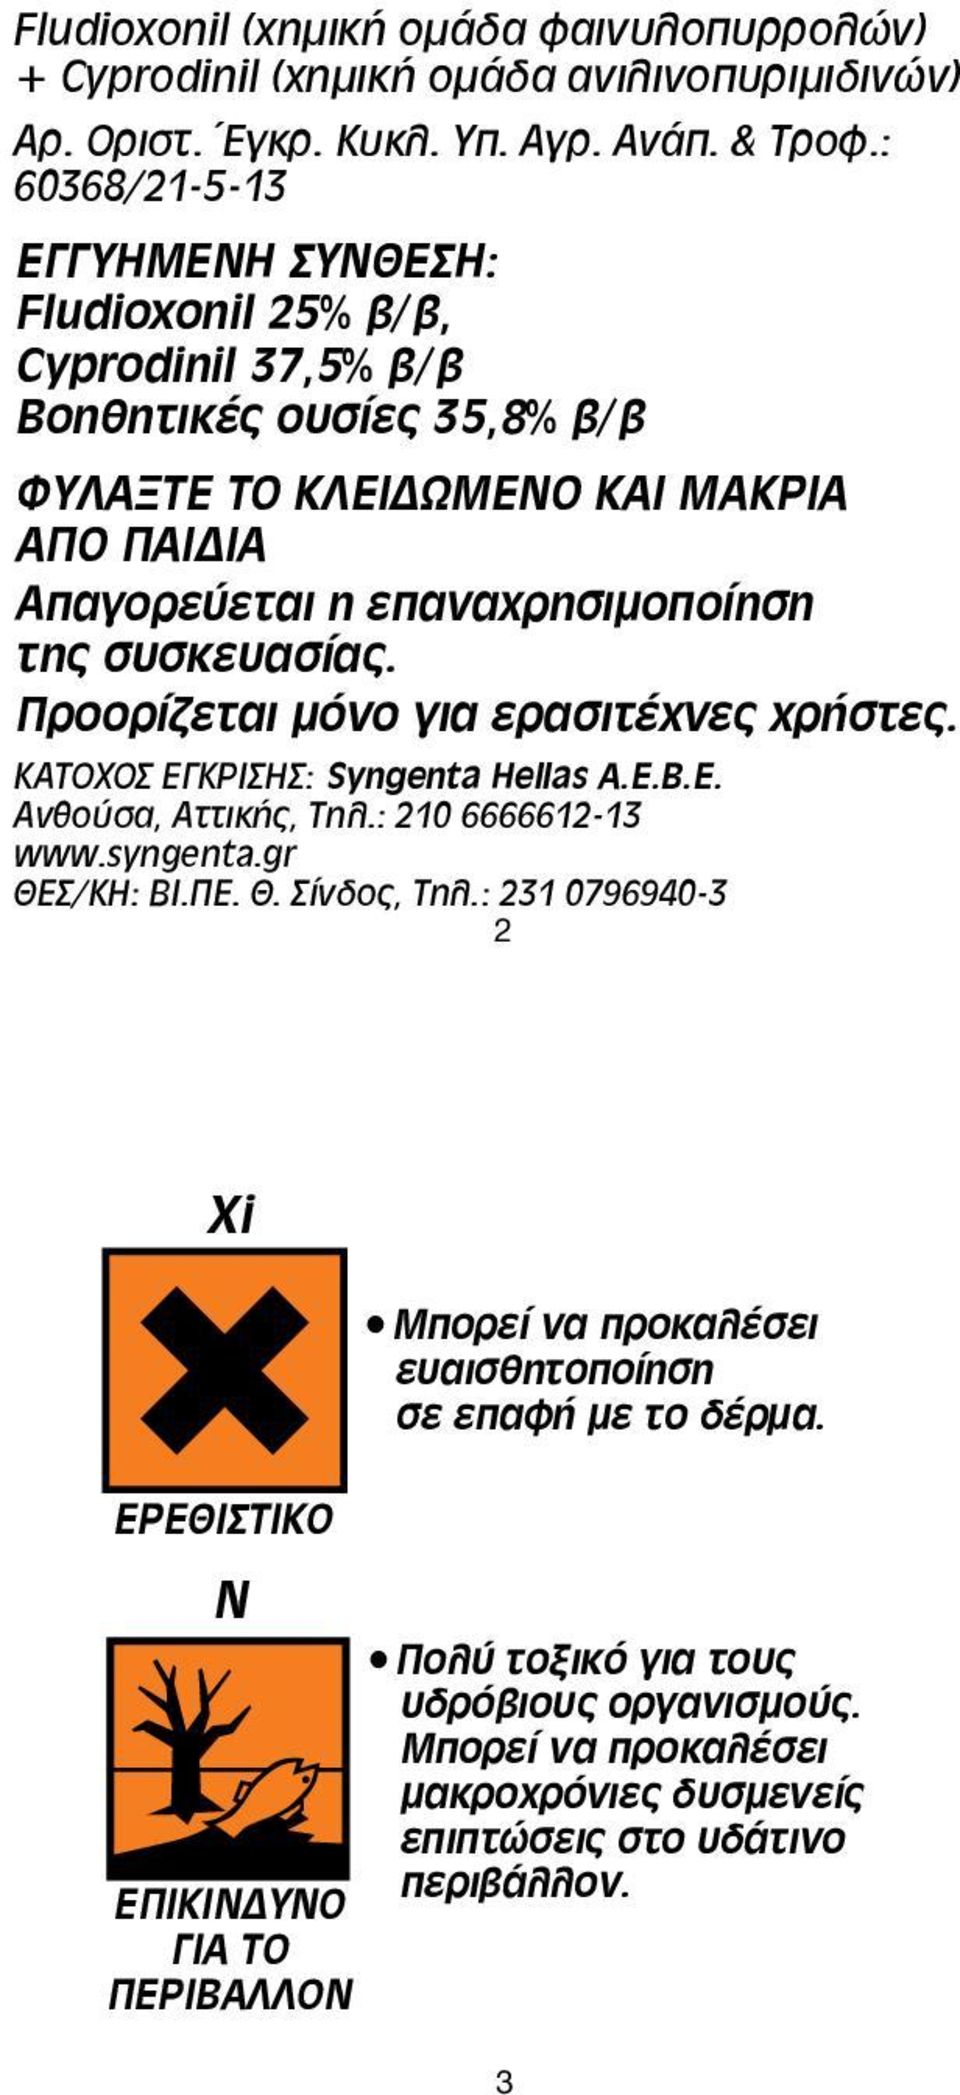 συσκευασίας. Προορίζεται μόνο για ερασιτέχνες χρήστες. ΚΑΤΟΧΟΣ ΕΓΚΡΙΣΗΣ: Syngenta Hellas A.E.B.E. Ανθούσα, Αττικής, Τηλ.: 210 6666612-13 www.syngenta.gr ΘΕΣ/ΚΗ: ΒΙ.ΠΕ. Θ. Σίνδος, Τηλ.